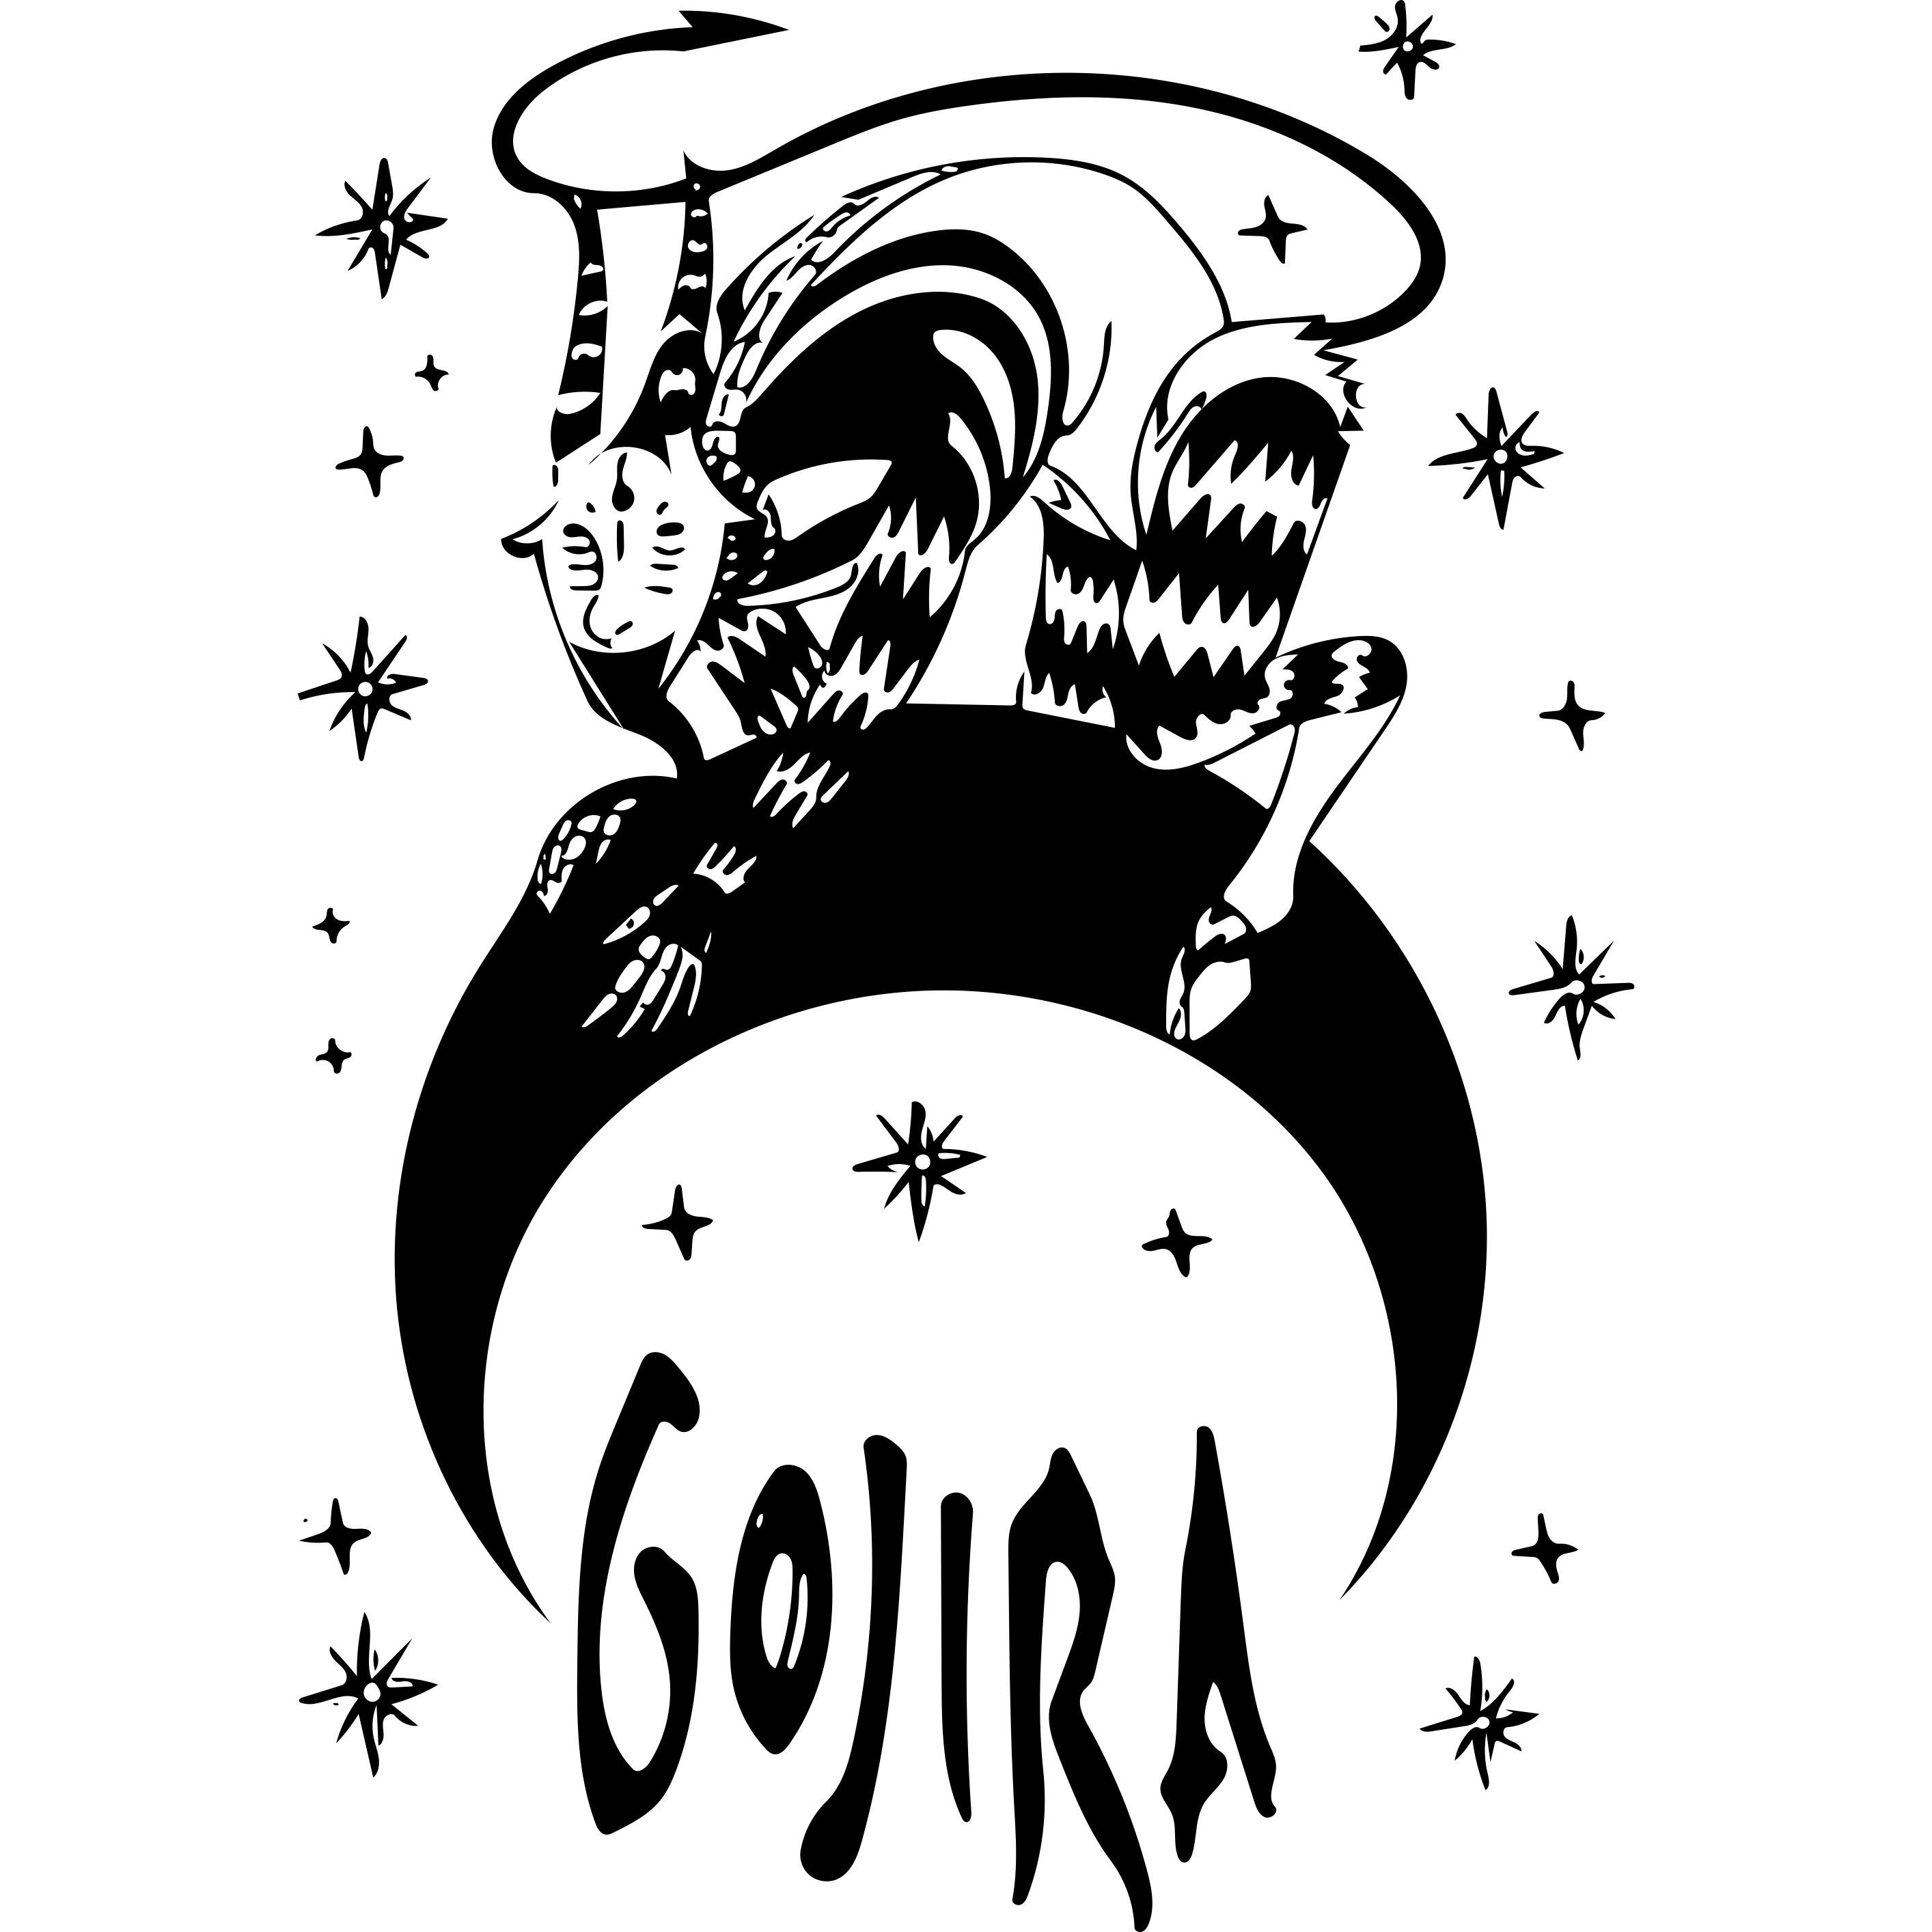 Gojira From Mars To Sirius 2828x2828 Wallpaper Teahub Io